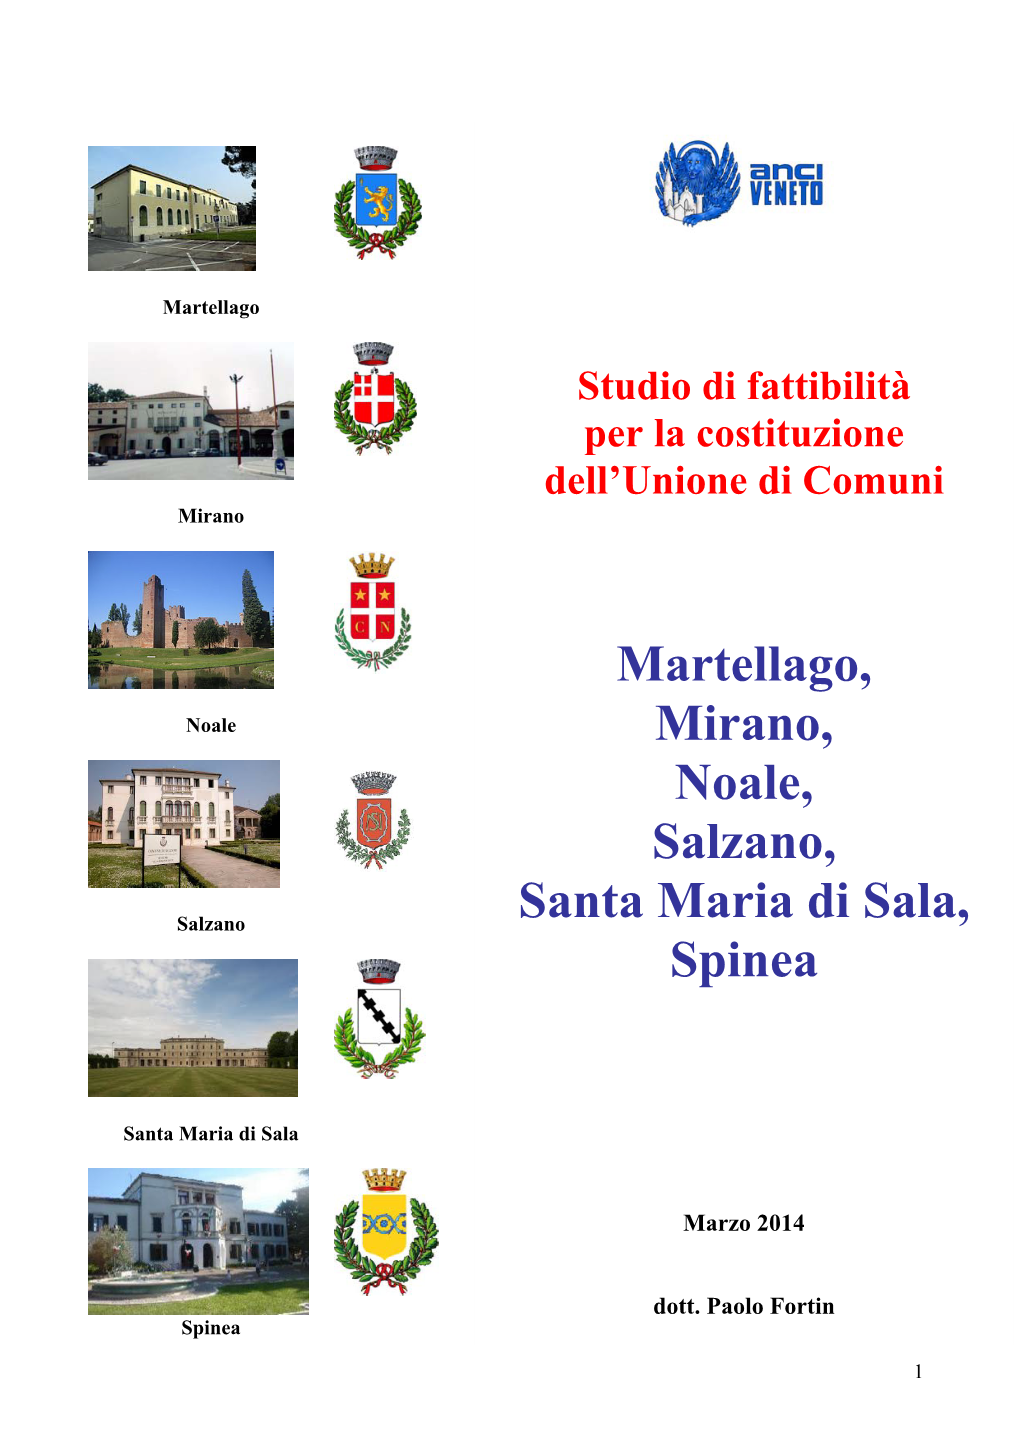 Martellago, Mirano, Noale, Salzano, Santa Maria Di Sala, Spinea